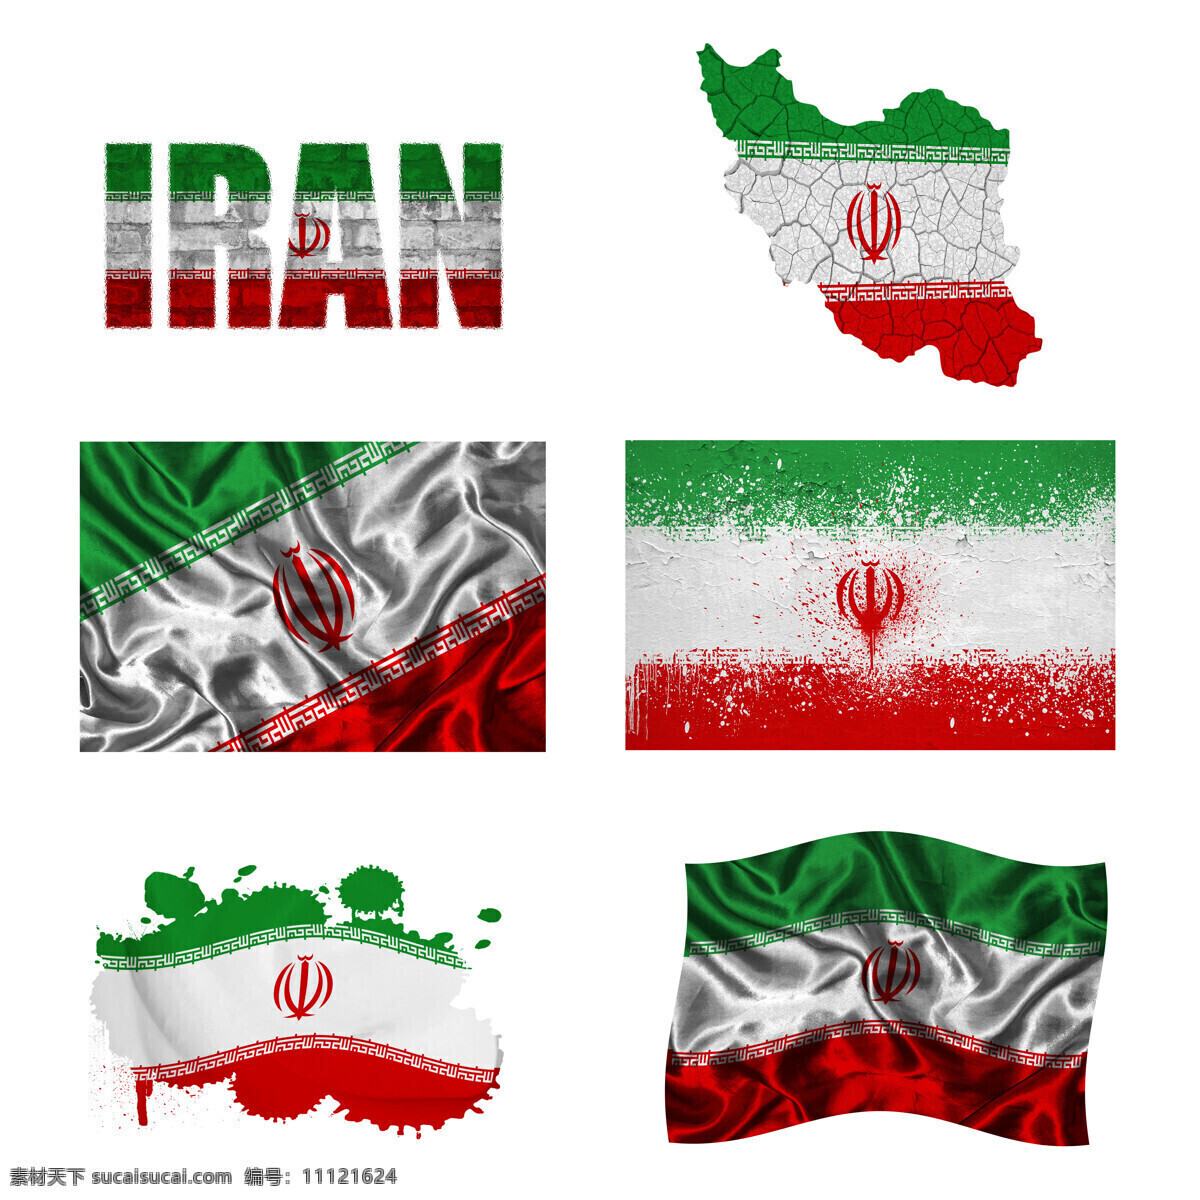 伊朗 国旗 地图 伊朗国旗 国旗图案 旗帜 国旗图片 生活百科